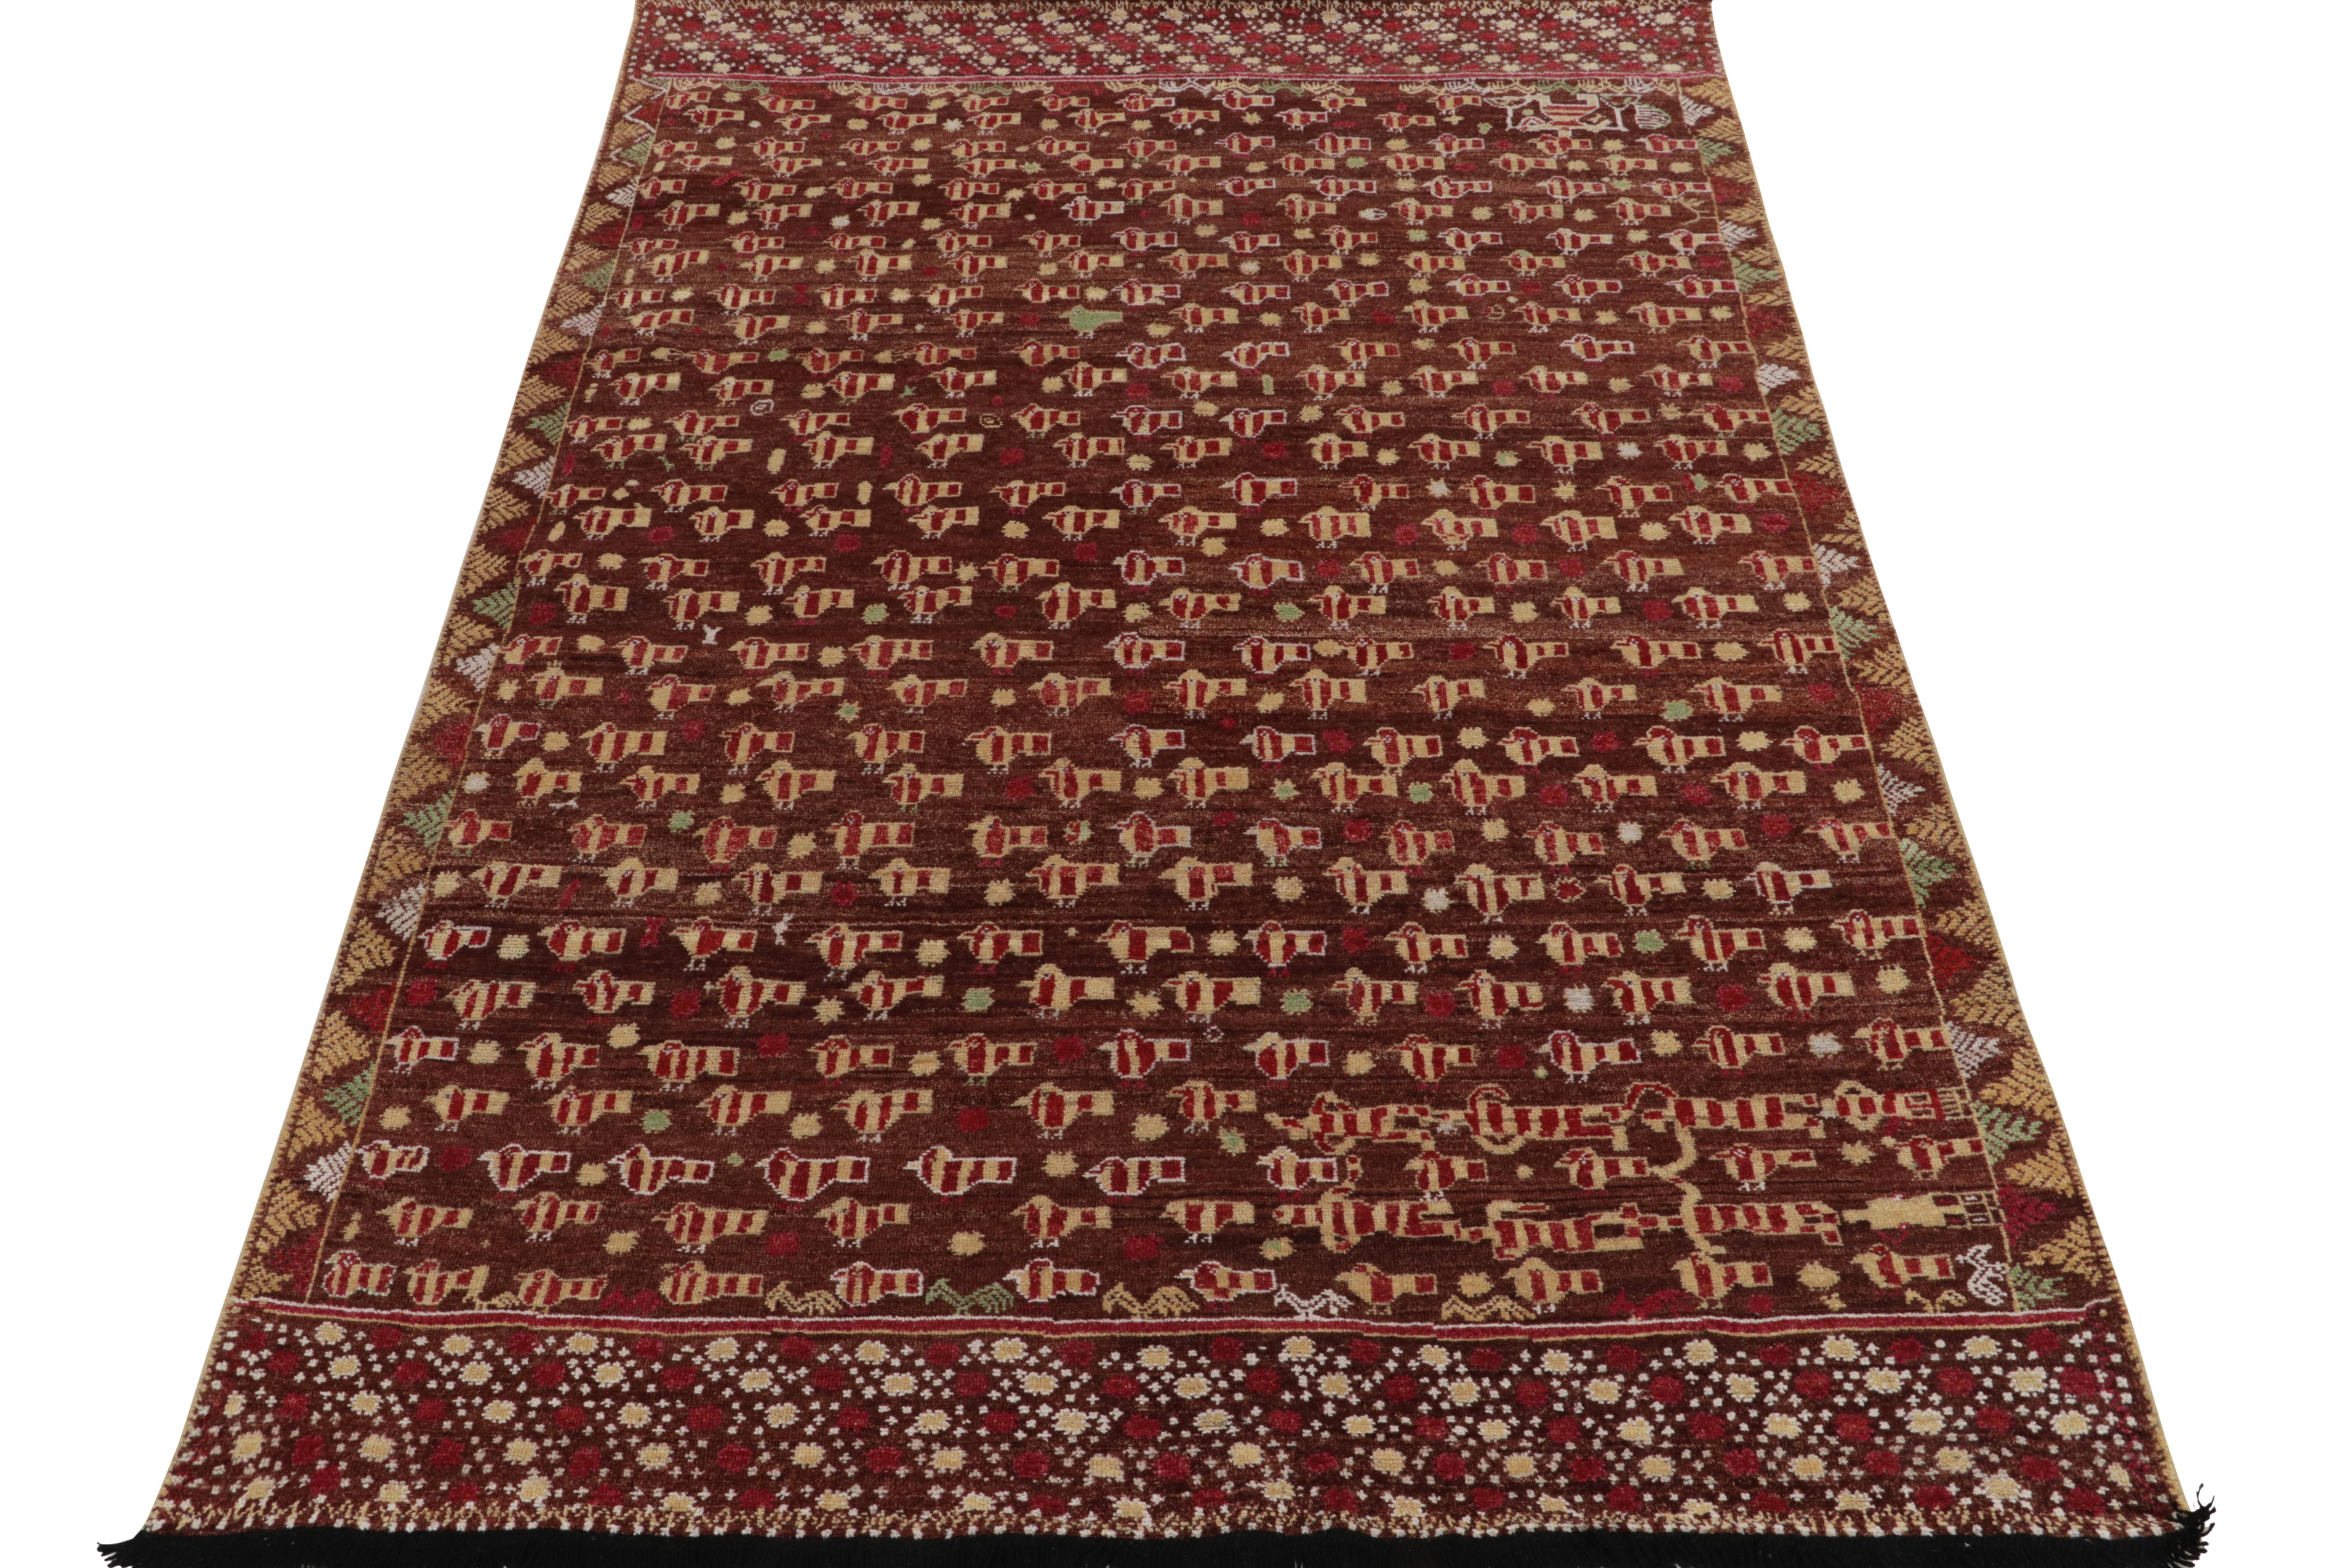 Dieser 6x9 große Teppich aus unserer Burano-Kollektion ist aus feiner Wolle handgewebt und überträgt die Inspiration der Phulkari-Volkskunst auf einen reichen, modernen Flor. Die Vision bringt eine zarte Interpretation von Cherub-Vogelbildern und